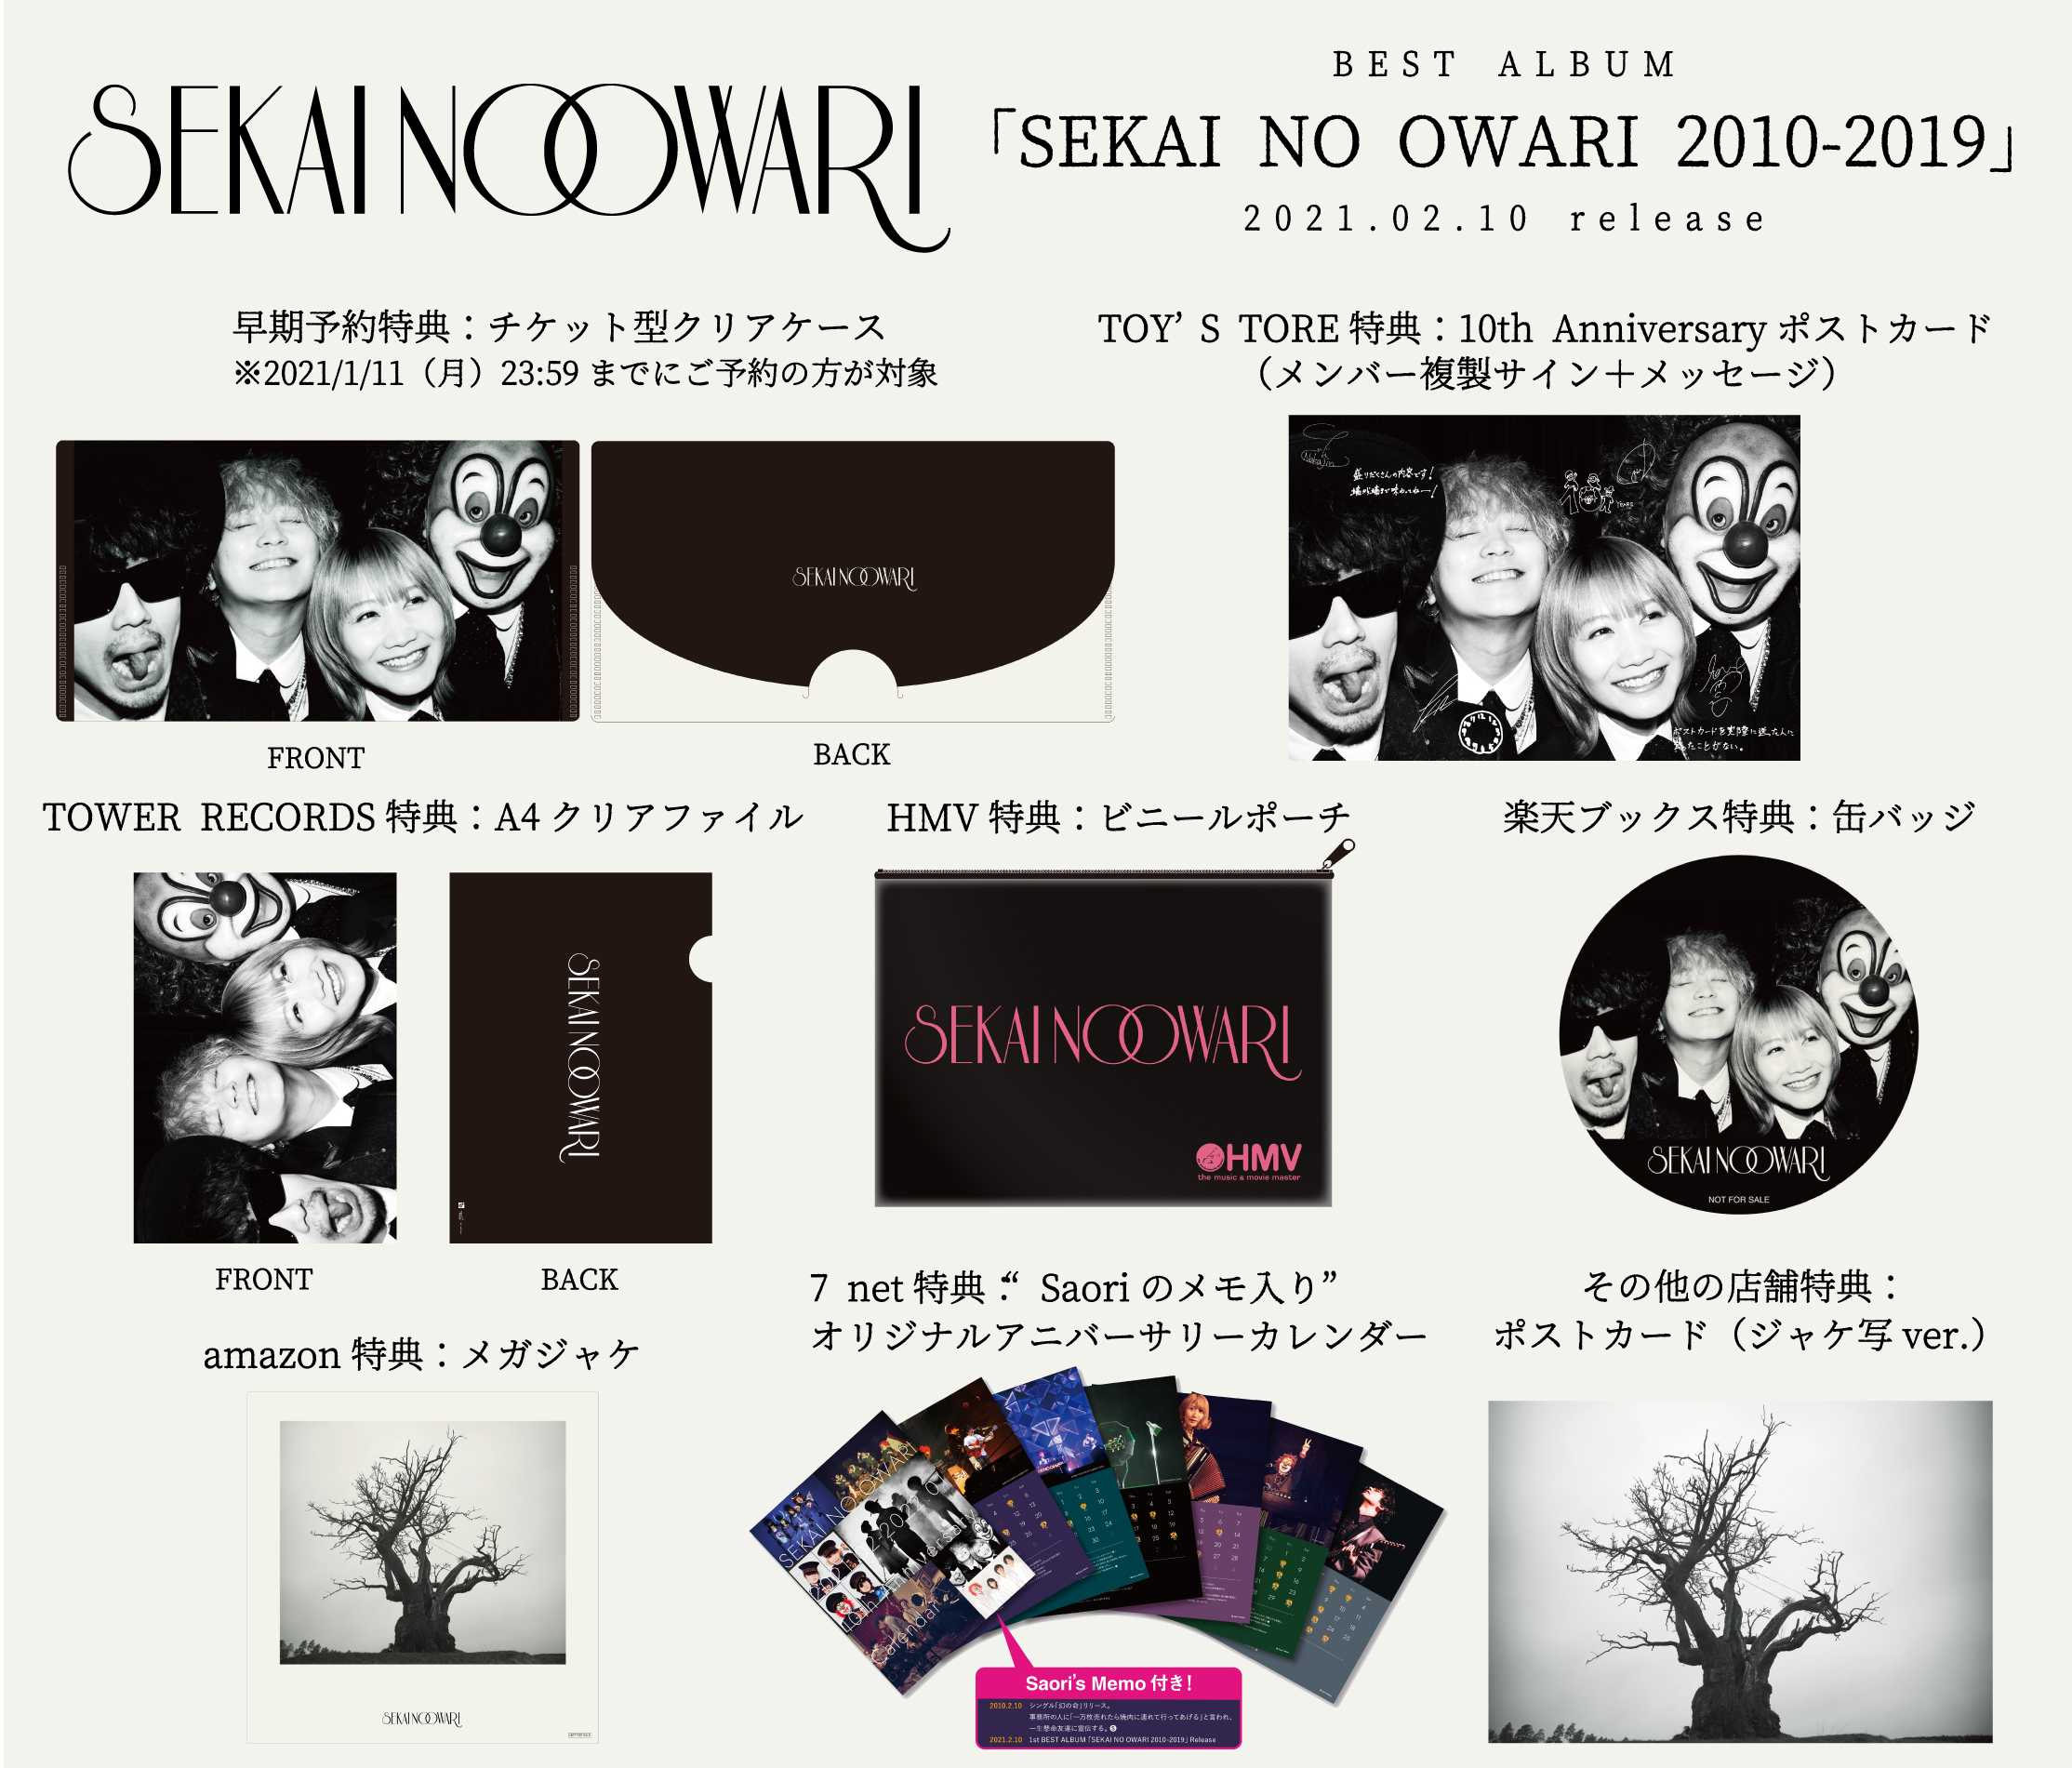 SEKAI NO OWARI、初のベストアルバム『SEKAI NO OWARI 2010-2019』購入 